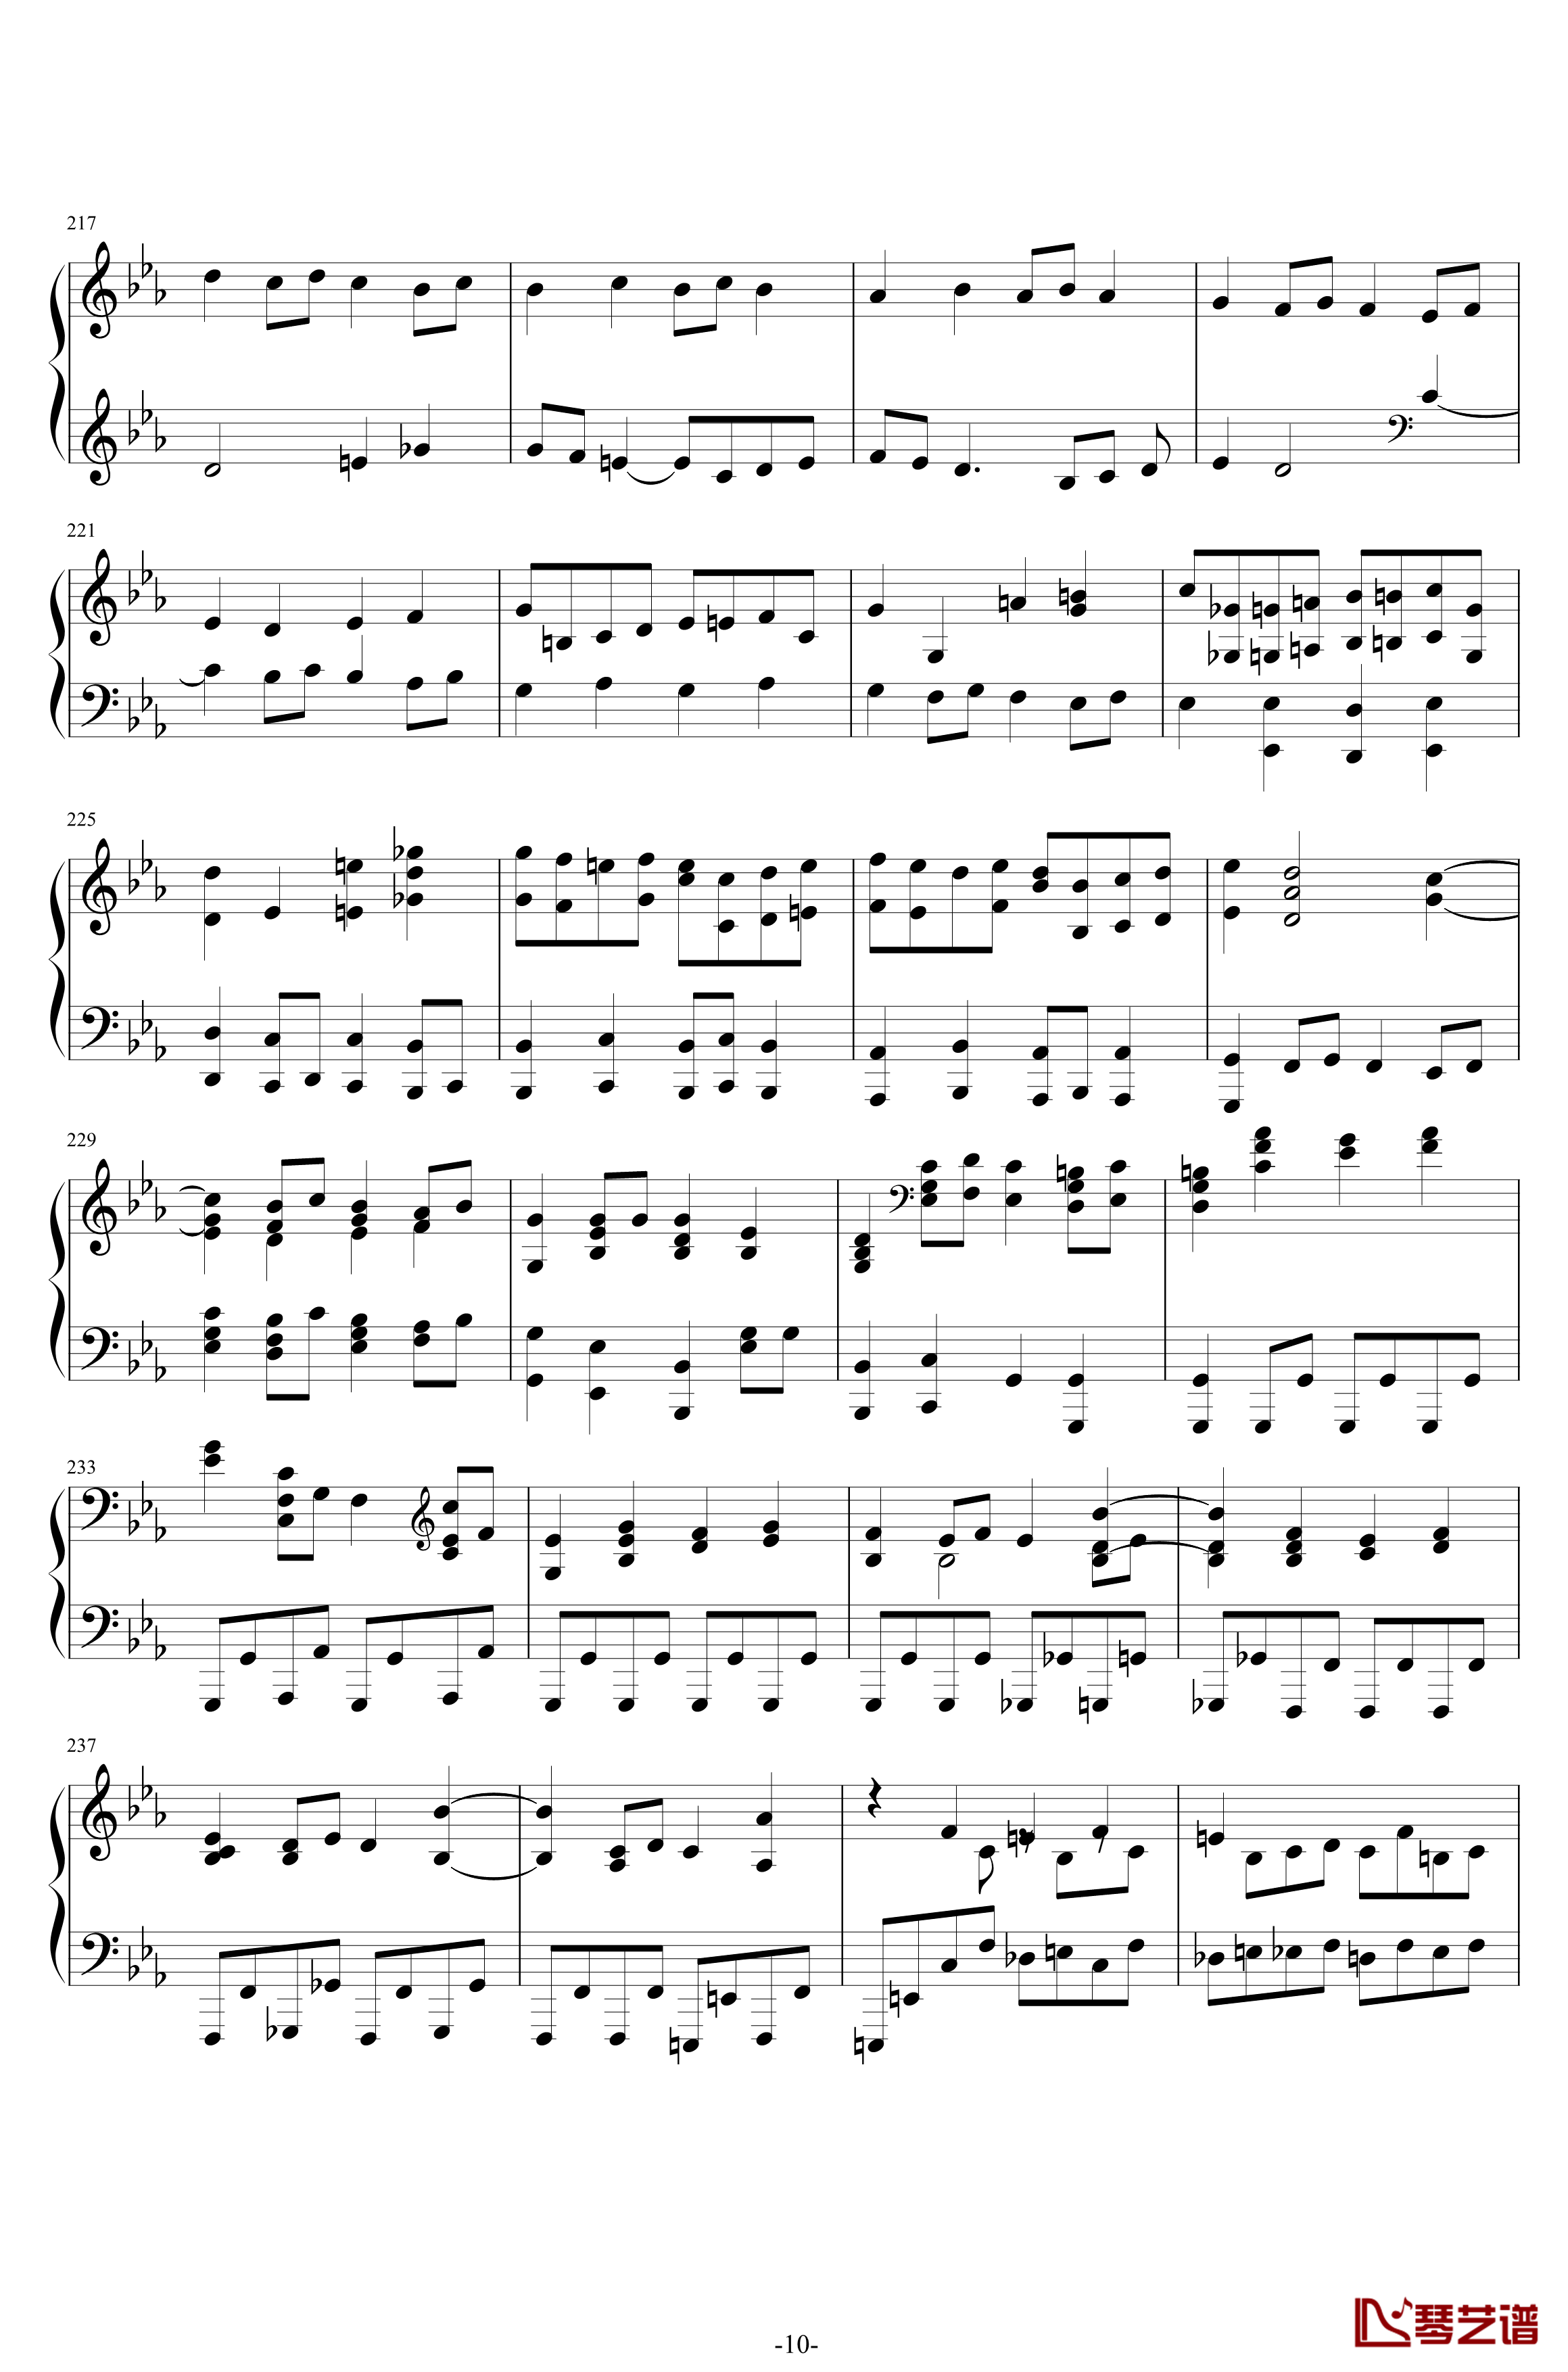 第二钢琴协奏曲钢琴谱--第三乐章独奏版-拉赫马尼若夫-c小调10